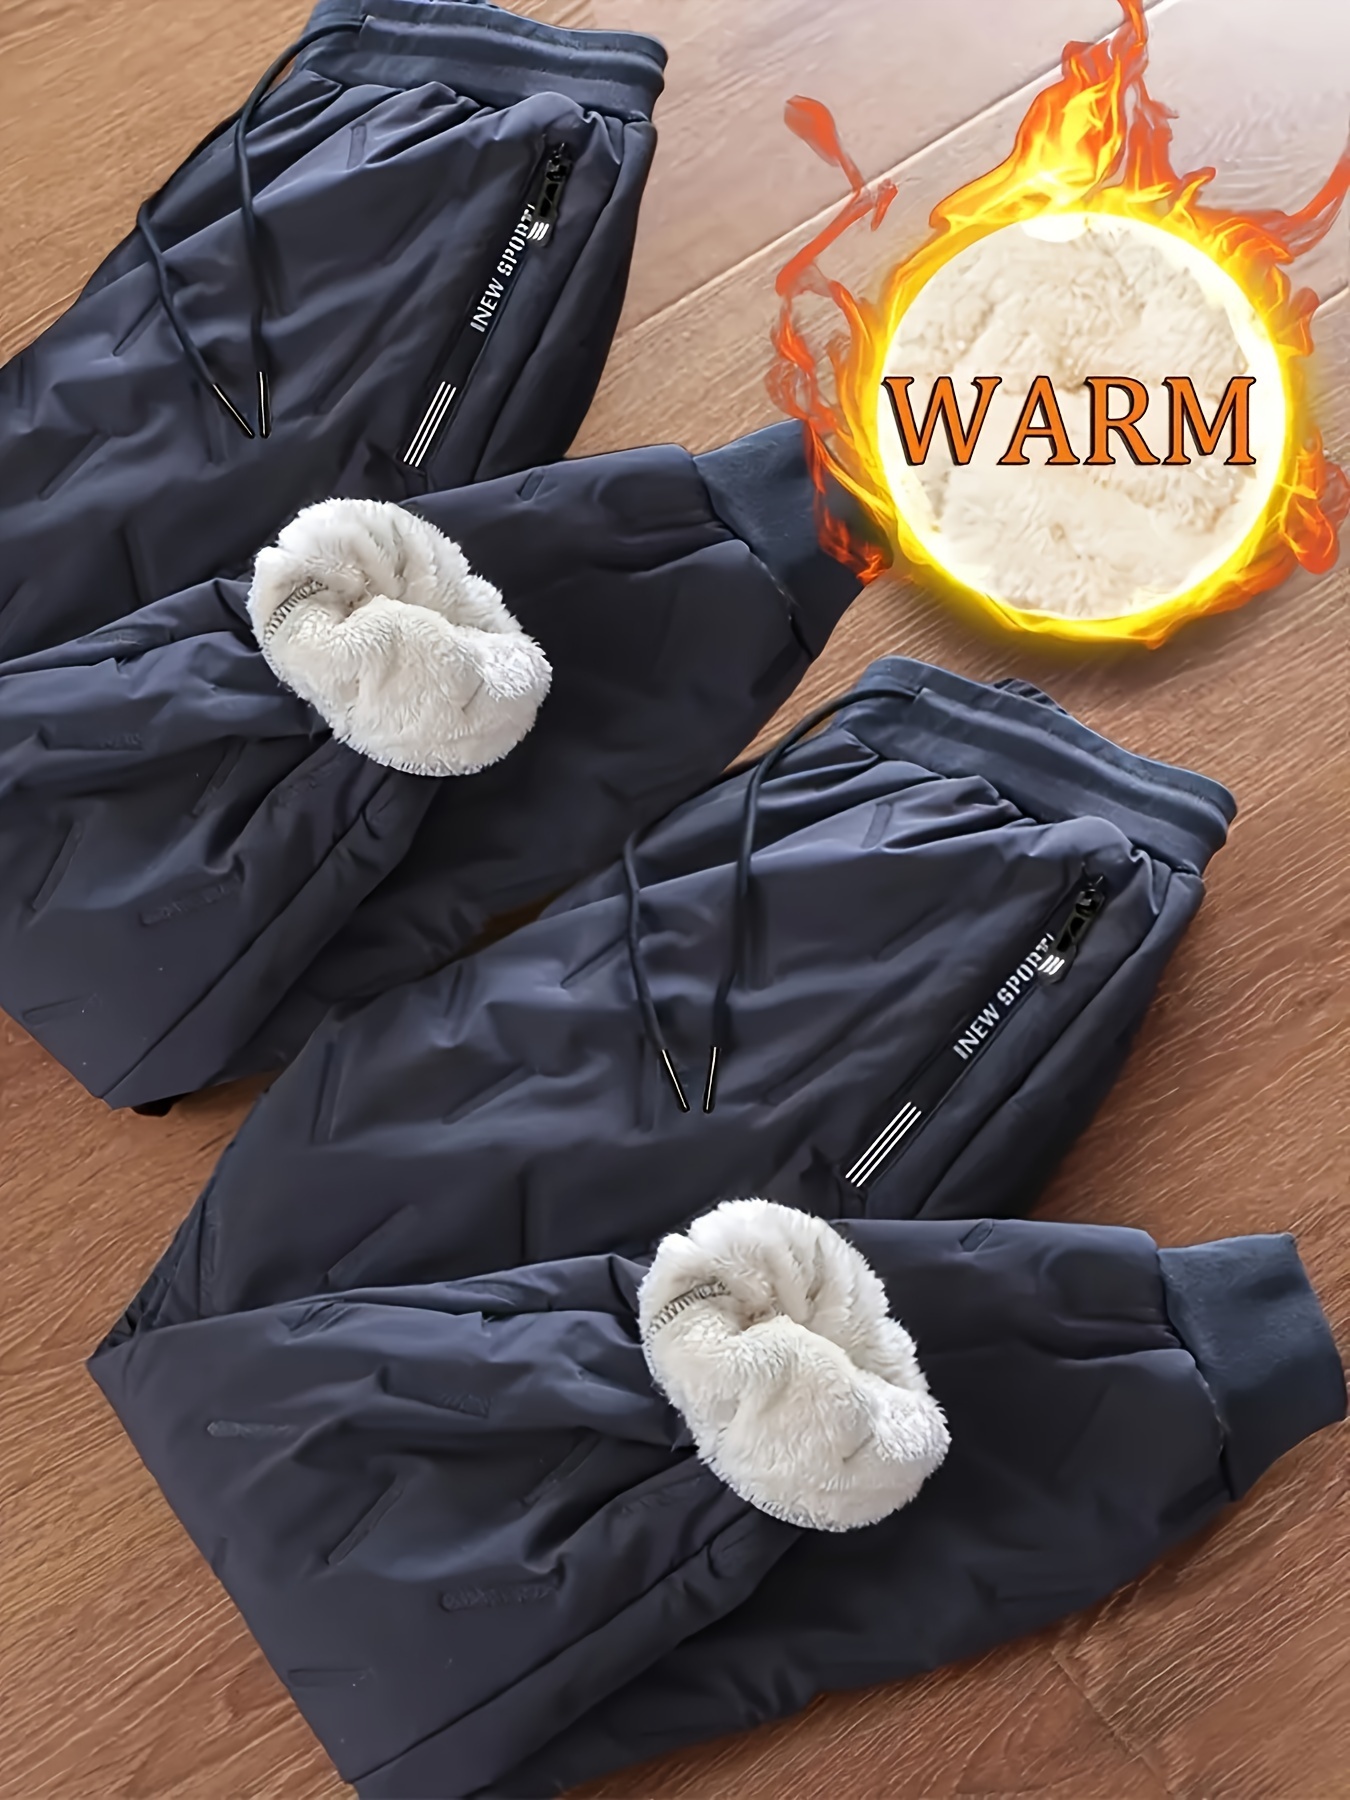 Ropa de esquí para nieve impermeable conjunto de chaqueta pantalones para  hombre Mujeres - China Ropa de nieve y ropa de esquí precio